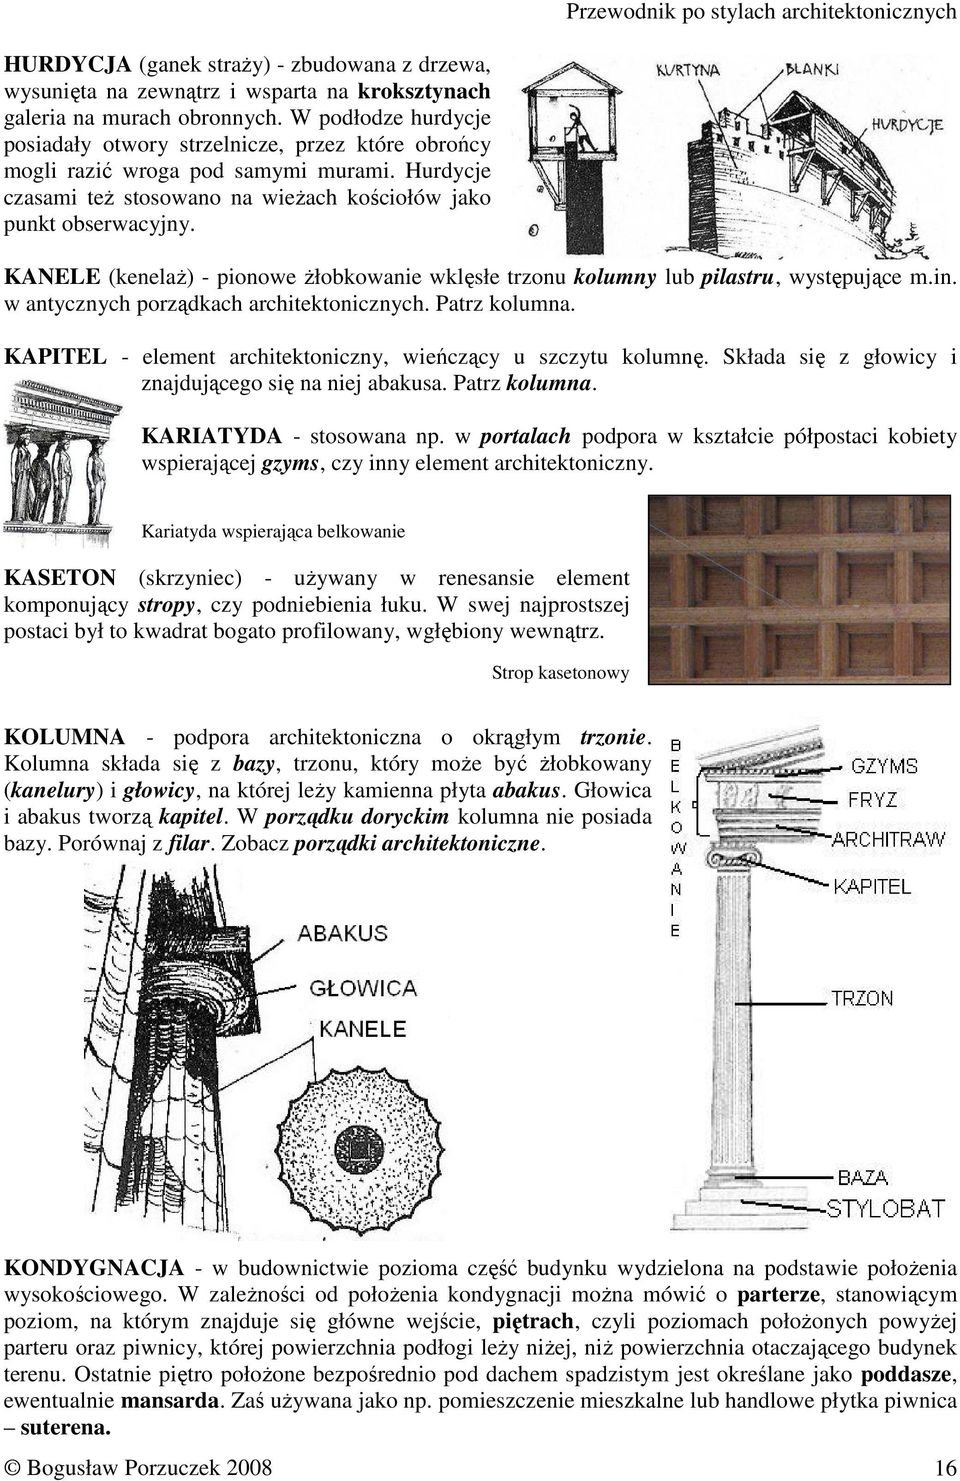 KANELE (kenelaŝ) - pionowe Ŝłobkowanie wklęsłe trzonu kolumny lub pilastru, występujące m.in. w antycznych porządkach architektonicznych. Patrz kolumna.